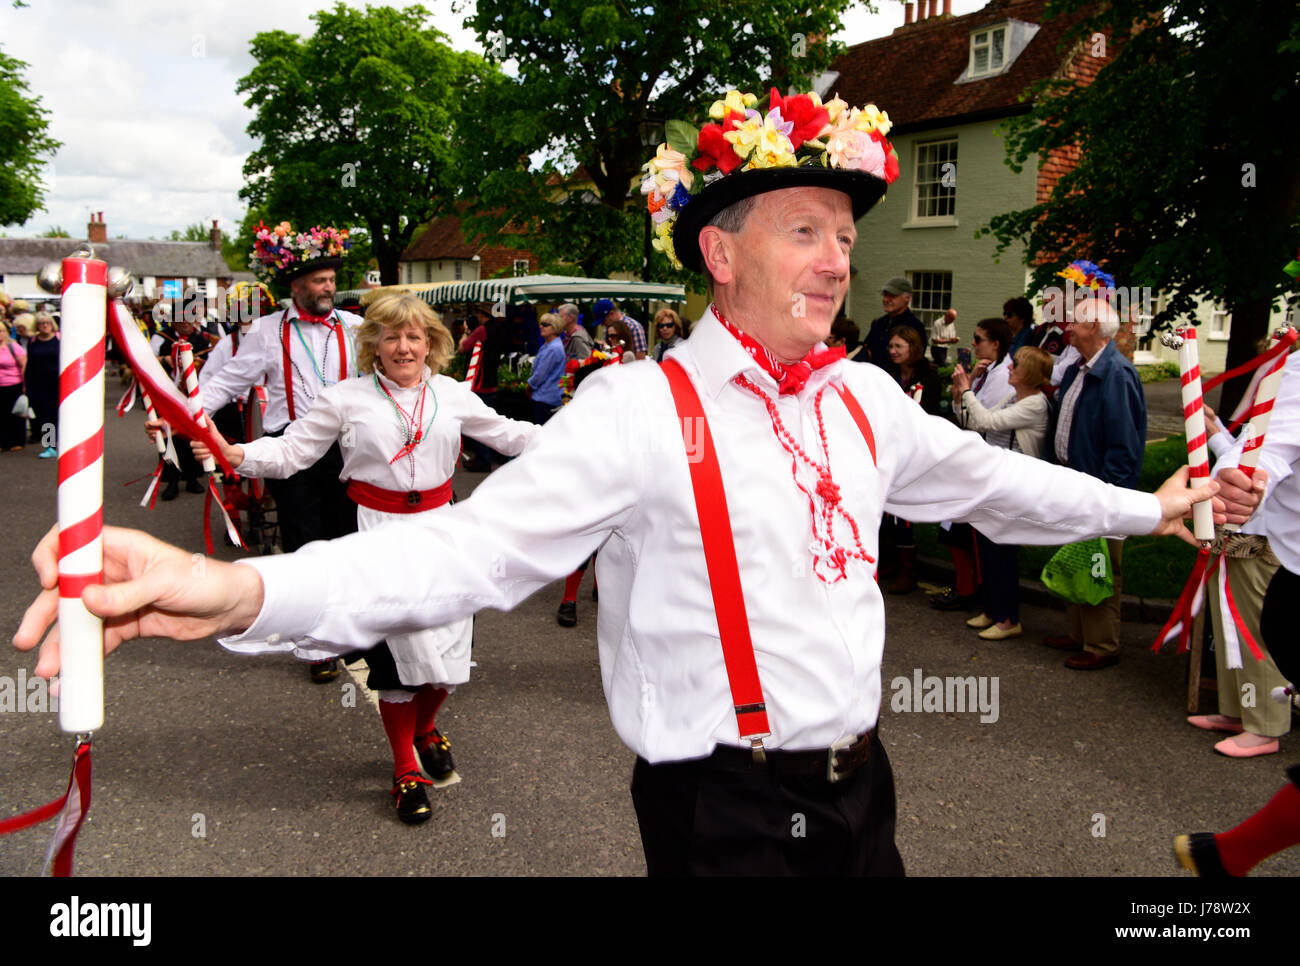 Alresford, 13e Festival annuel du cresson, danseurs défilent dans la ville le long de Broad Street, Alresford, Hampshire, Angleterre. Banque D'Images